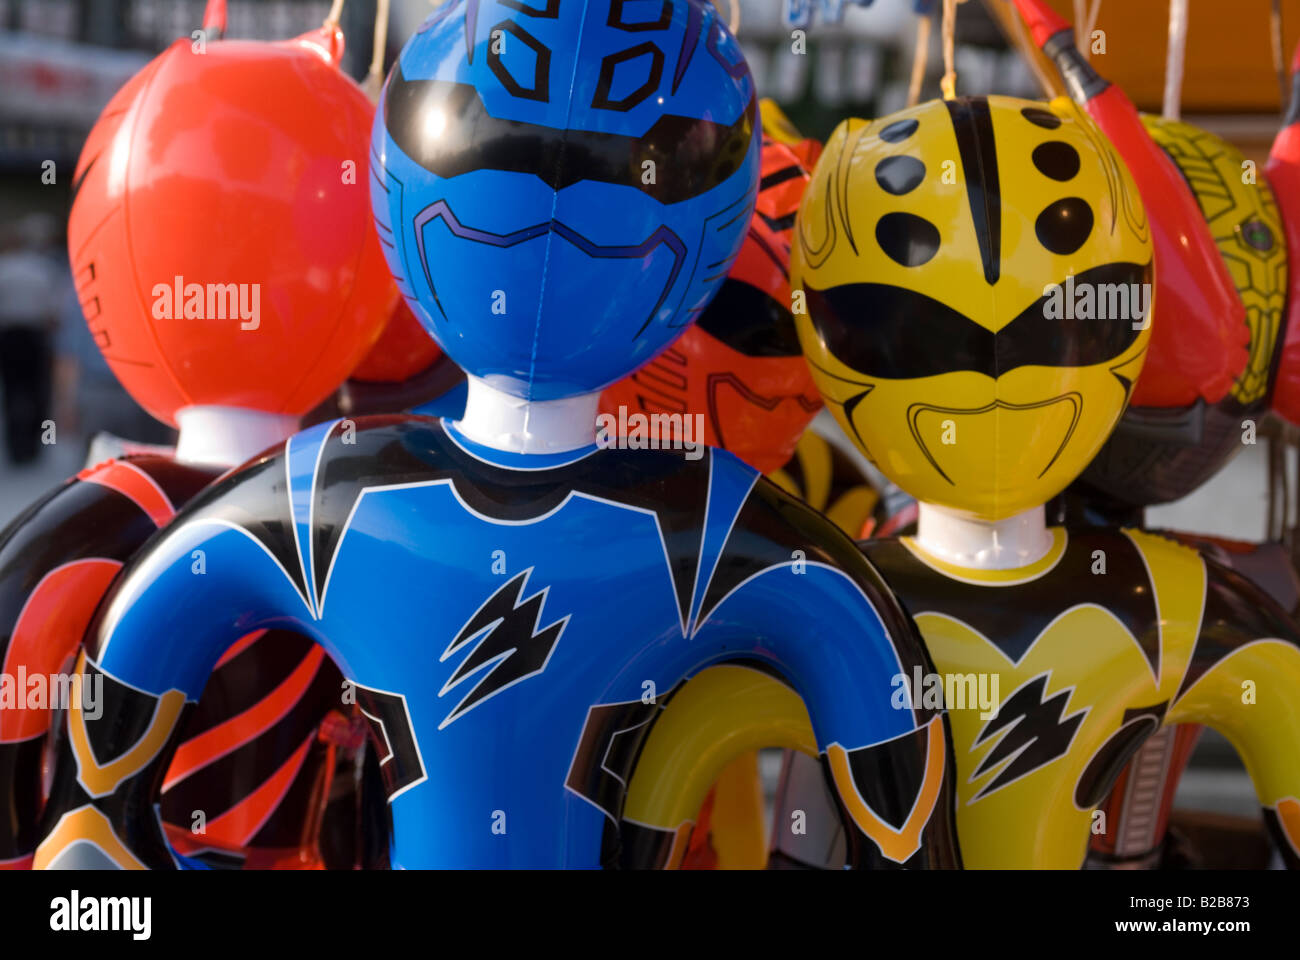 Azione gonfiabile figura super hero Power Rangers per la vendita come giocattoli per i bambini a un festival locale Foto Stock